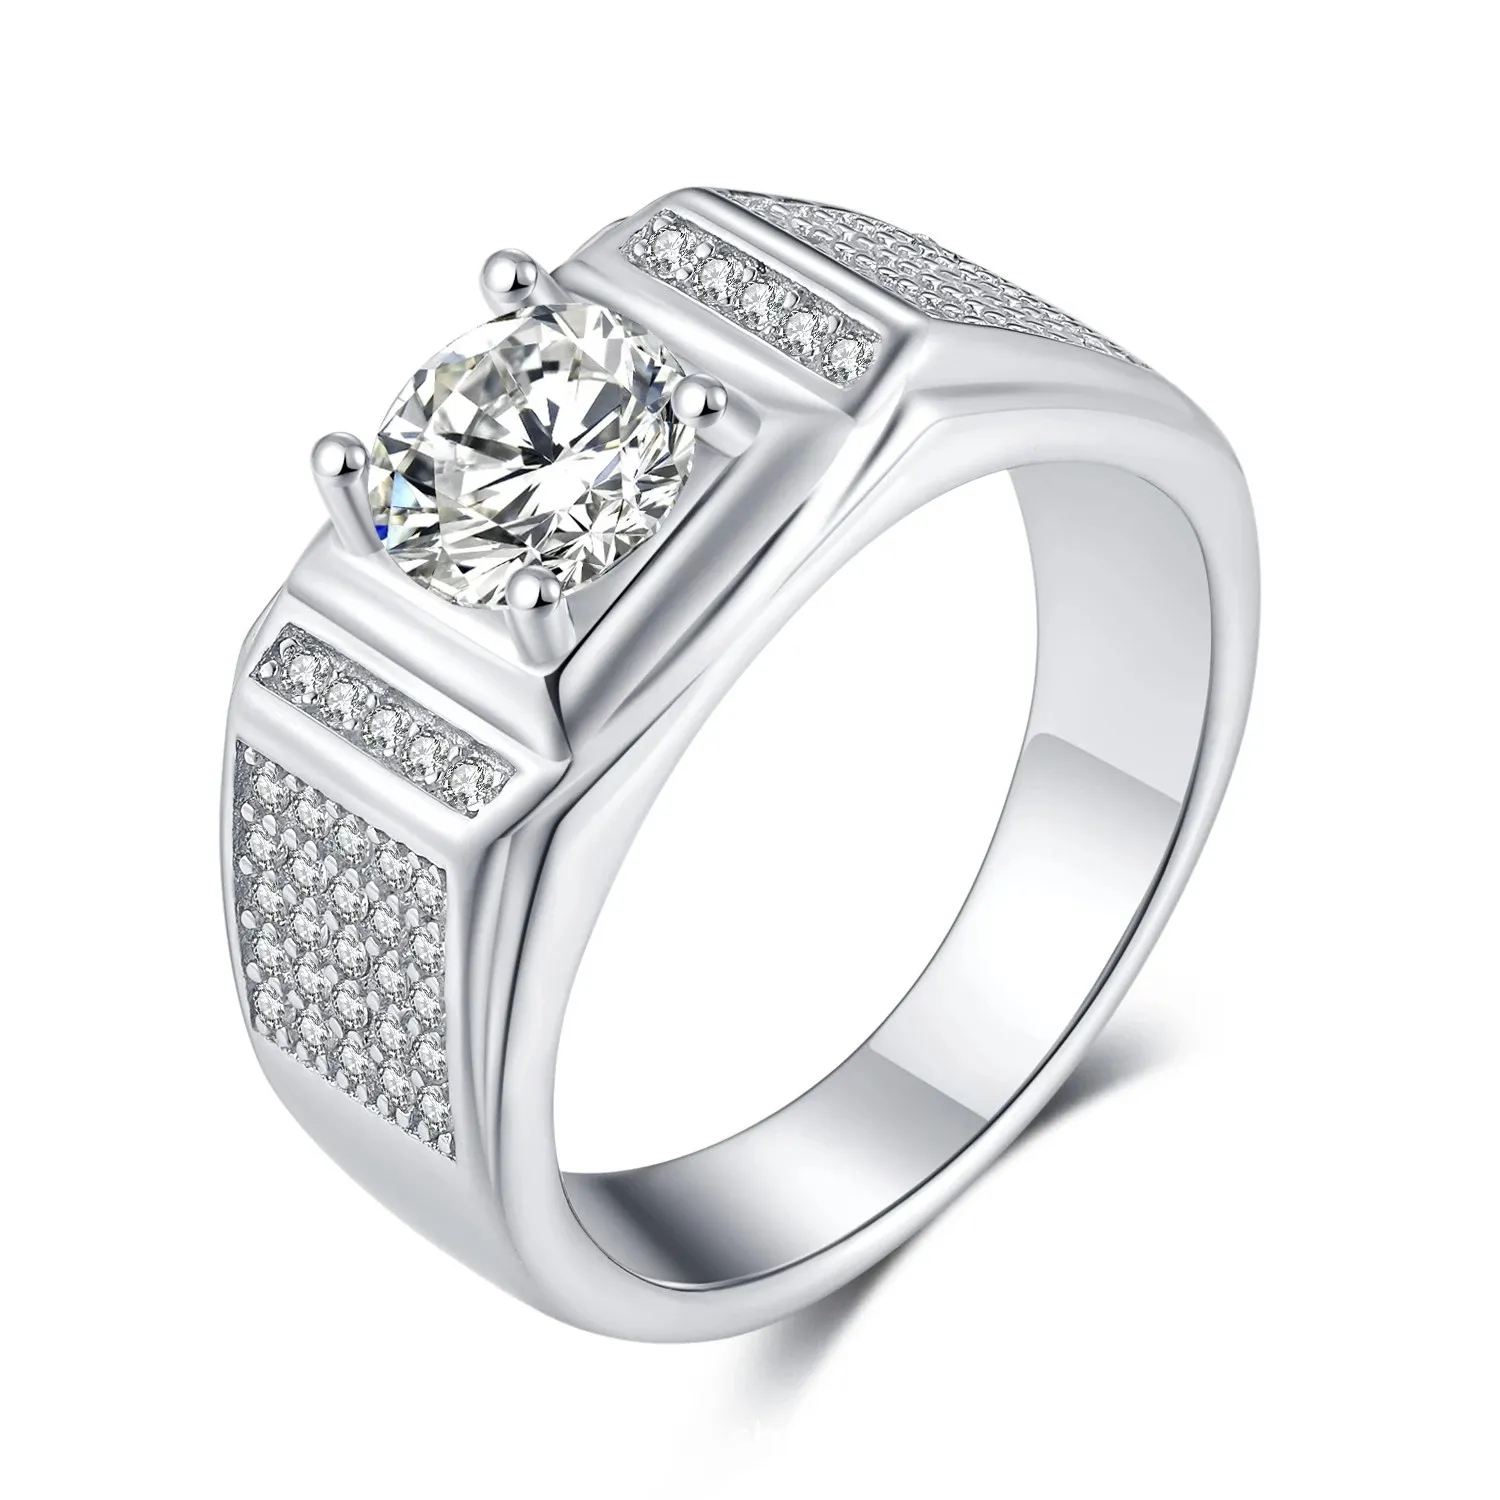 American Moissanite 6 Prong 설정 패션 S925 실버 링 마이크로 세트 멀티 다이아몬드 화려한 발렌타인 선물